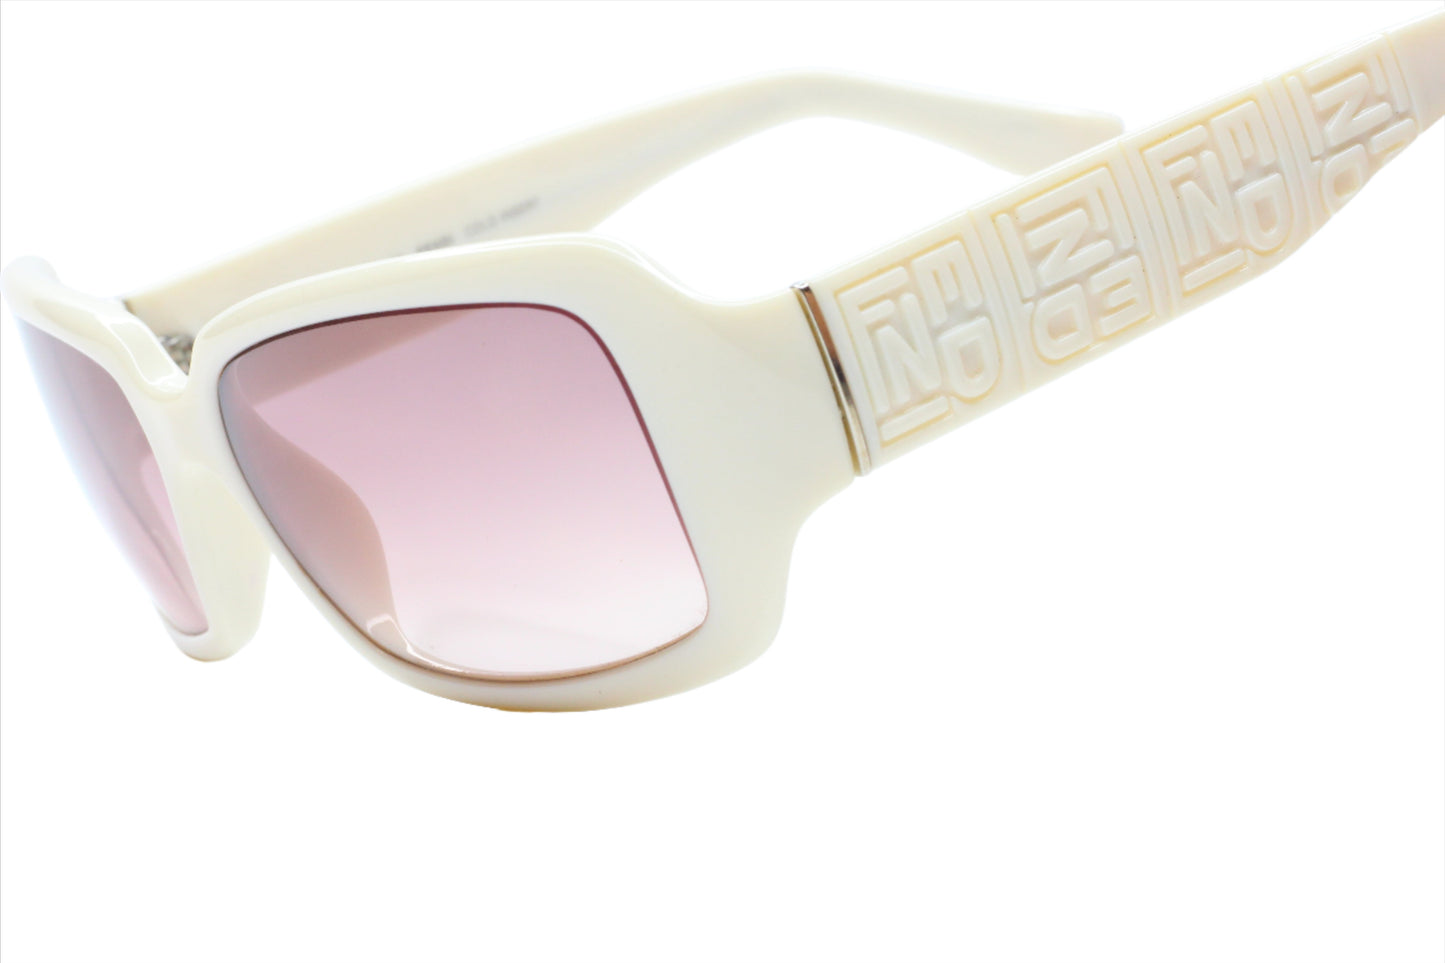 Fendi FS5008 Off White Gradient Acetate Italy Luxury Sunglasses